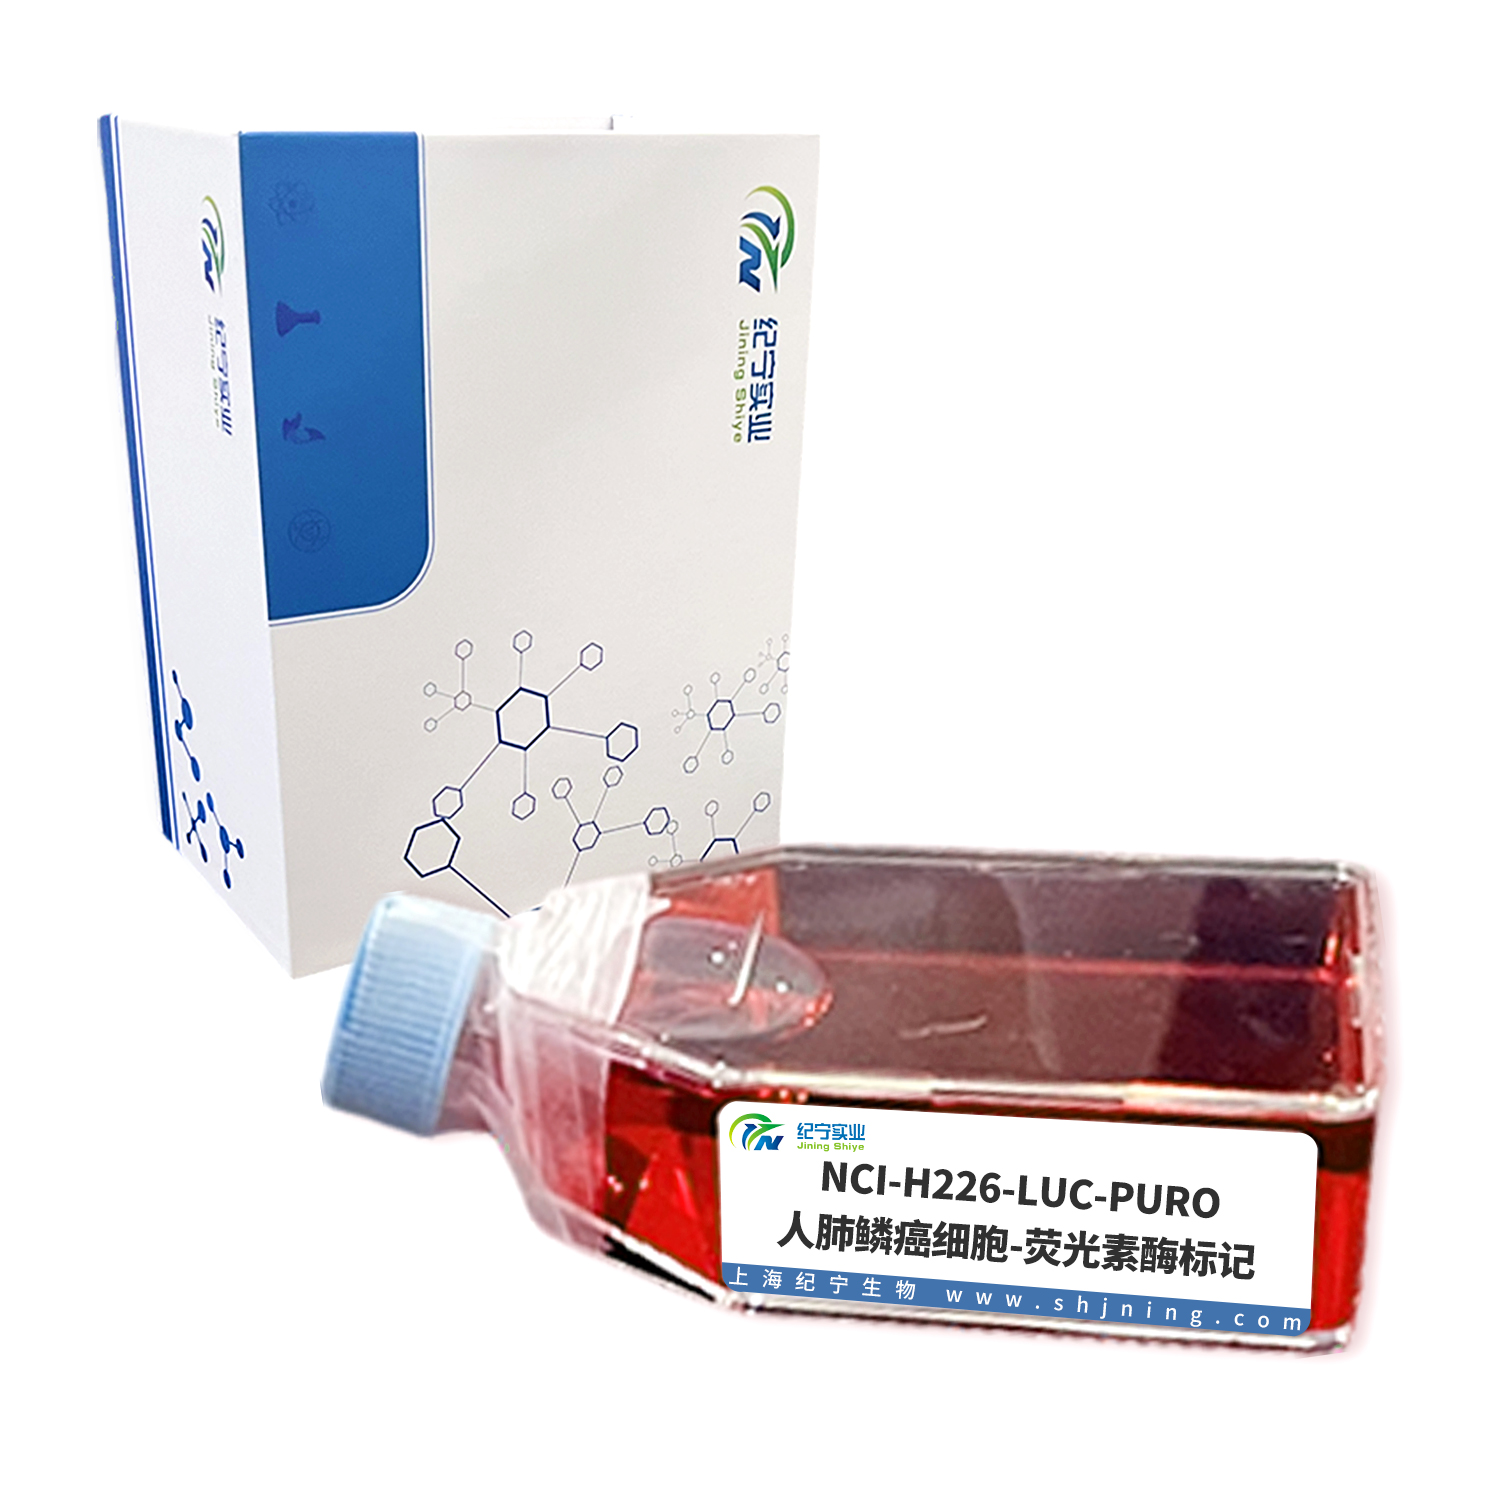 NCI-H226-LUC-PURO/人肺鳞癌细胞-荧光素酶标记